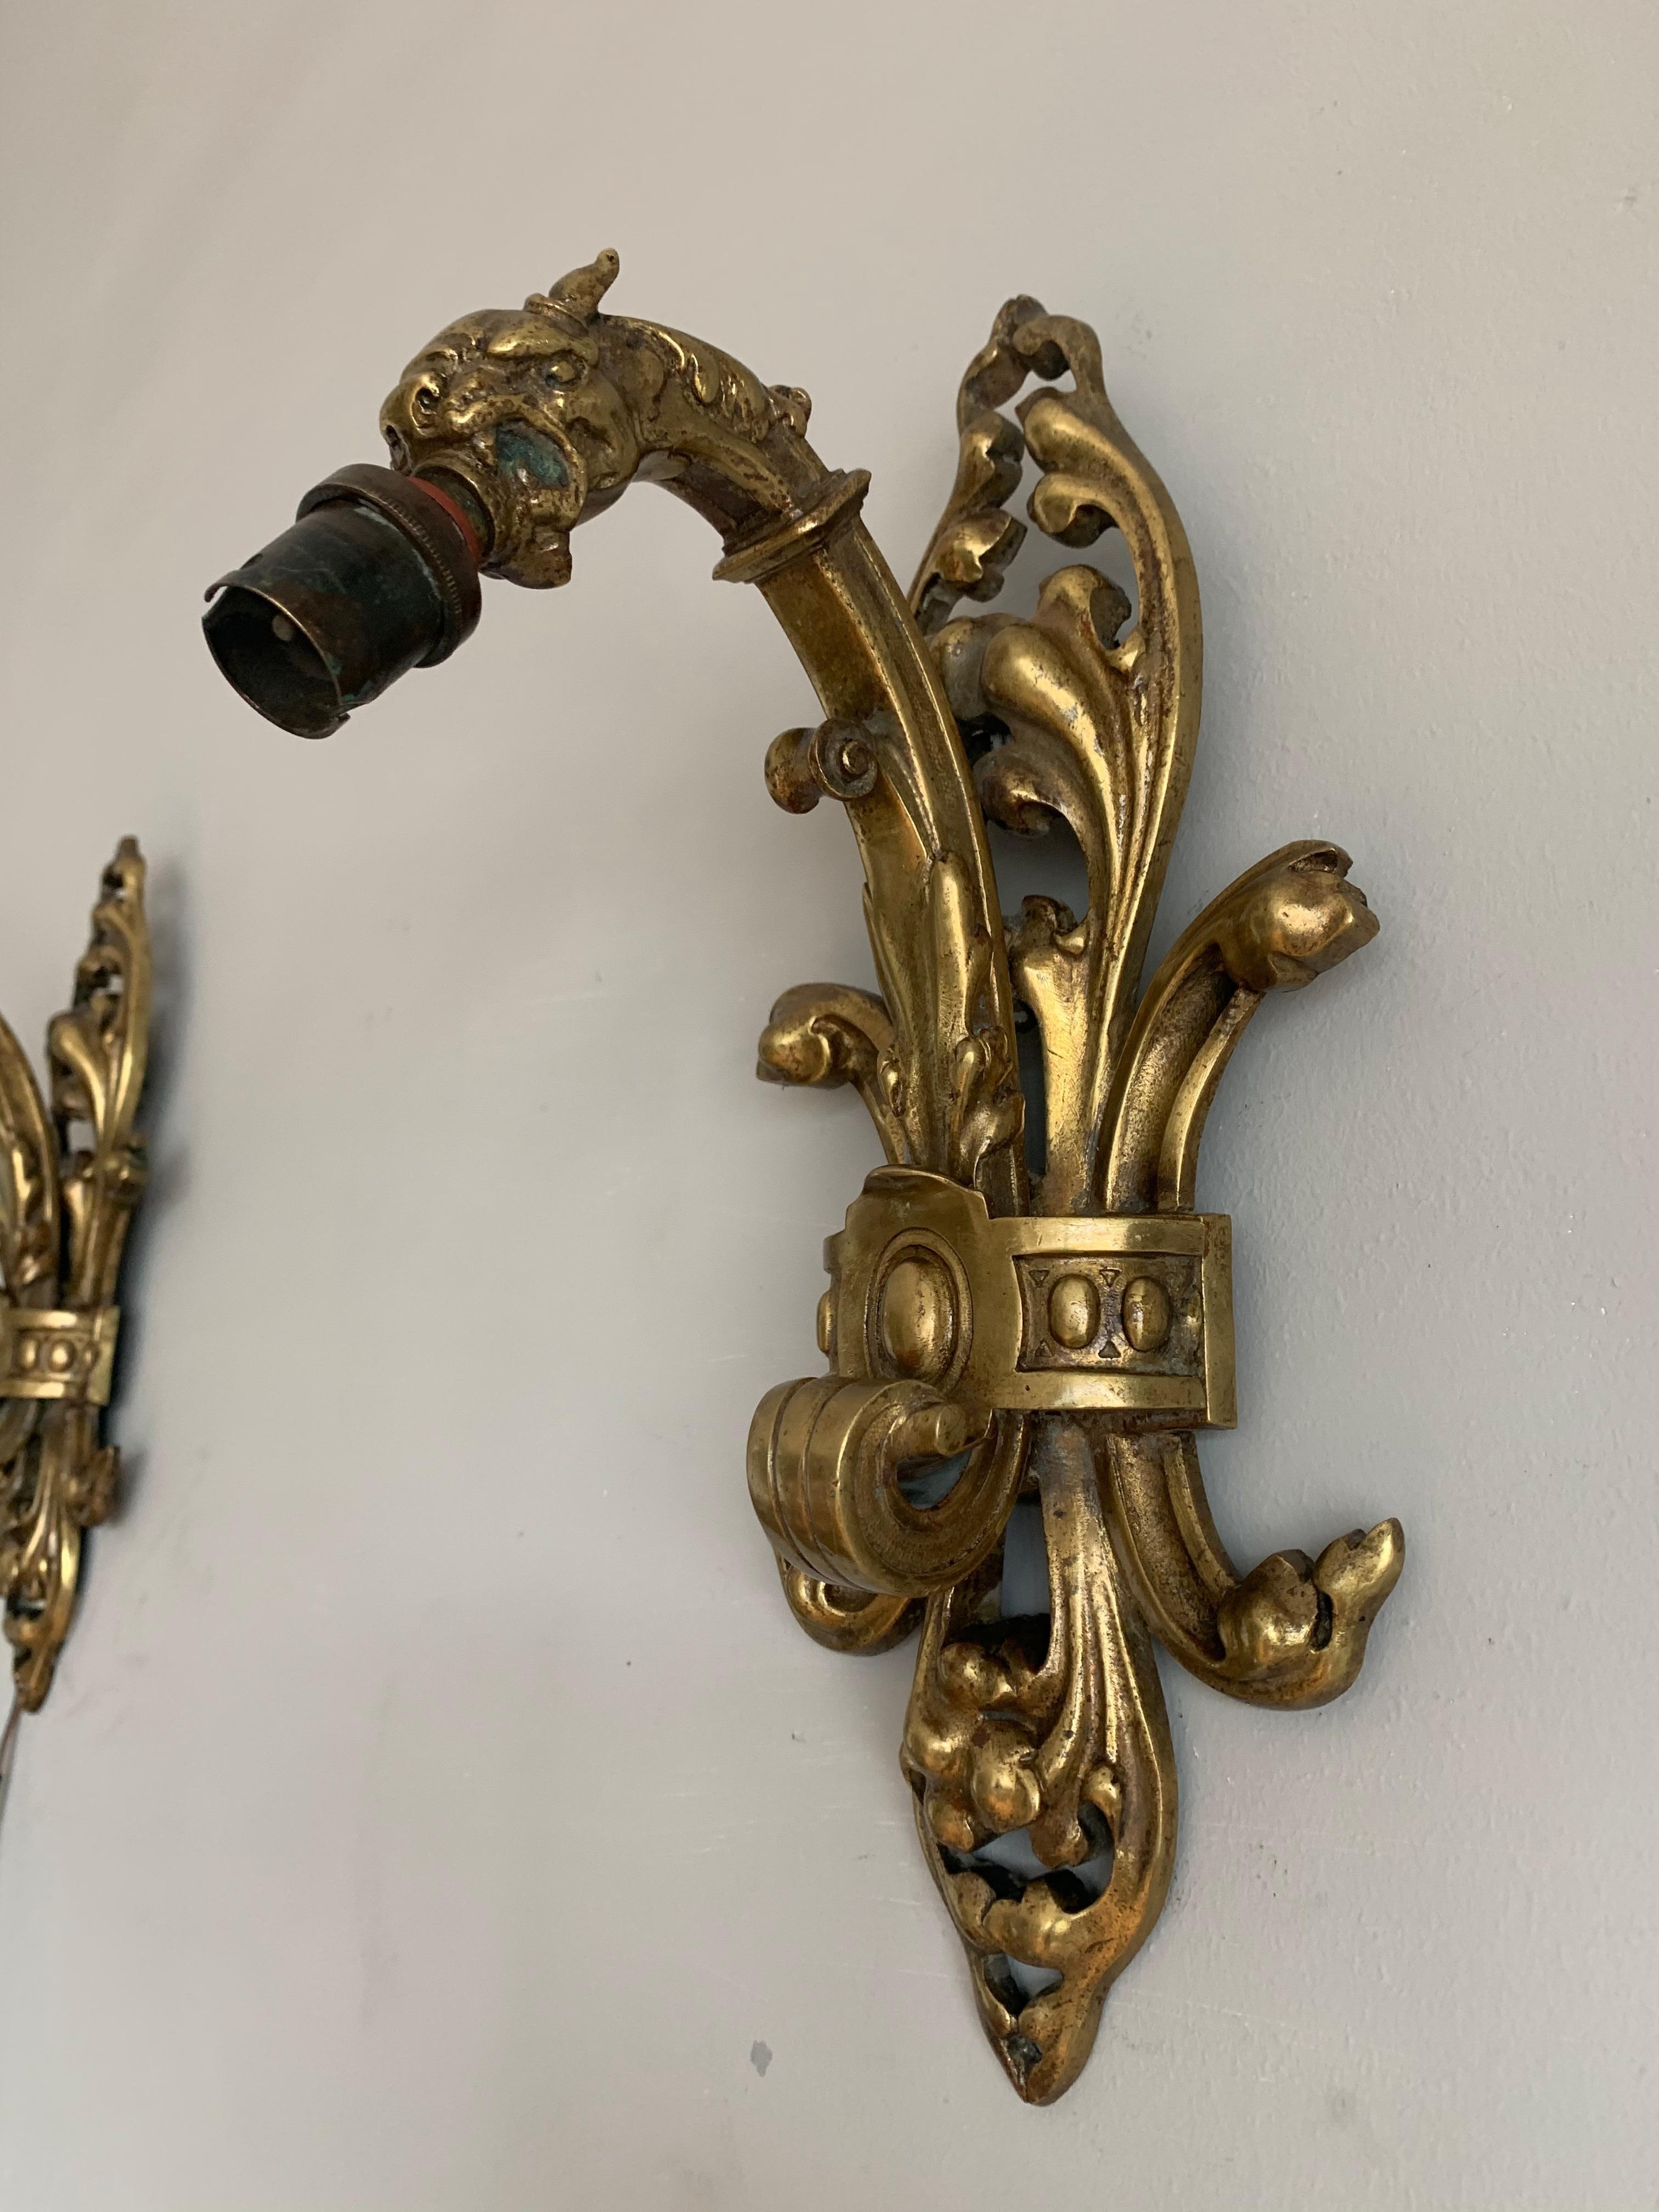 Zwei vergoldete Bronzeleuchten im Stil der Neogotik mit grimmigen Drachenköpfen.

Wenn Sie ein Sammler von gotischen Antiquitäten sind, dann könnte dieses seltene und hochwertig gefertigte Paar von Drachenleuchtern Ihnen gehören. Die um 1900-1910